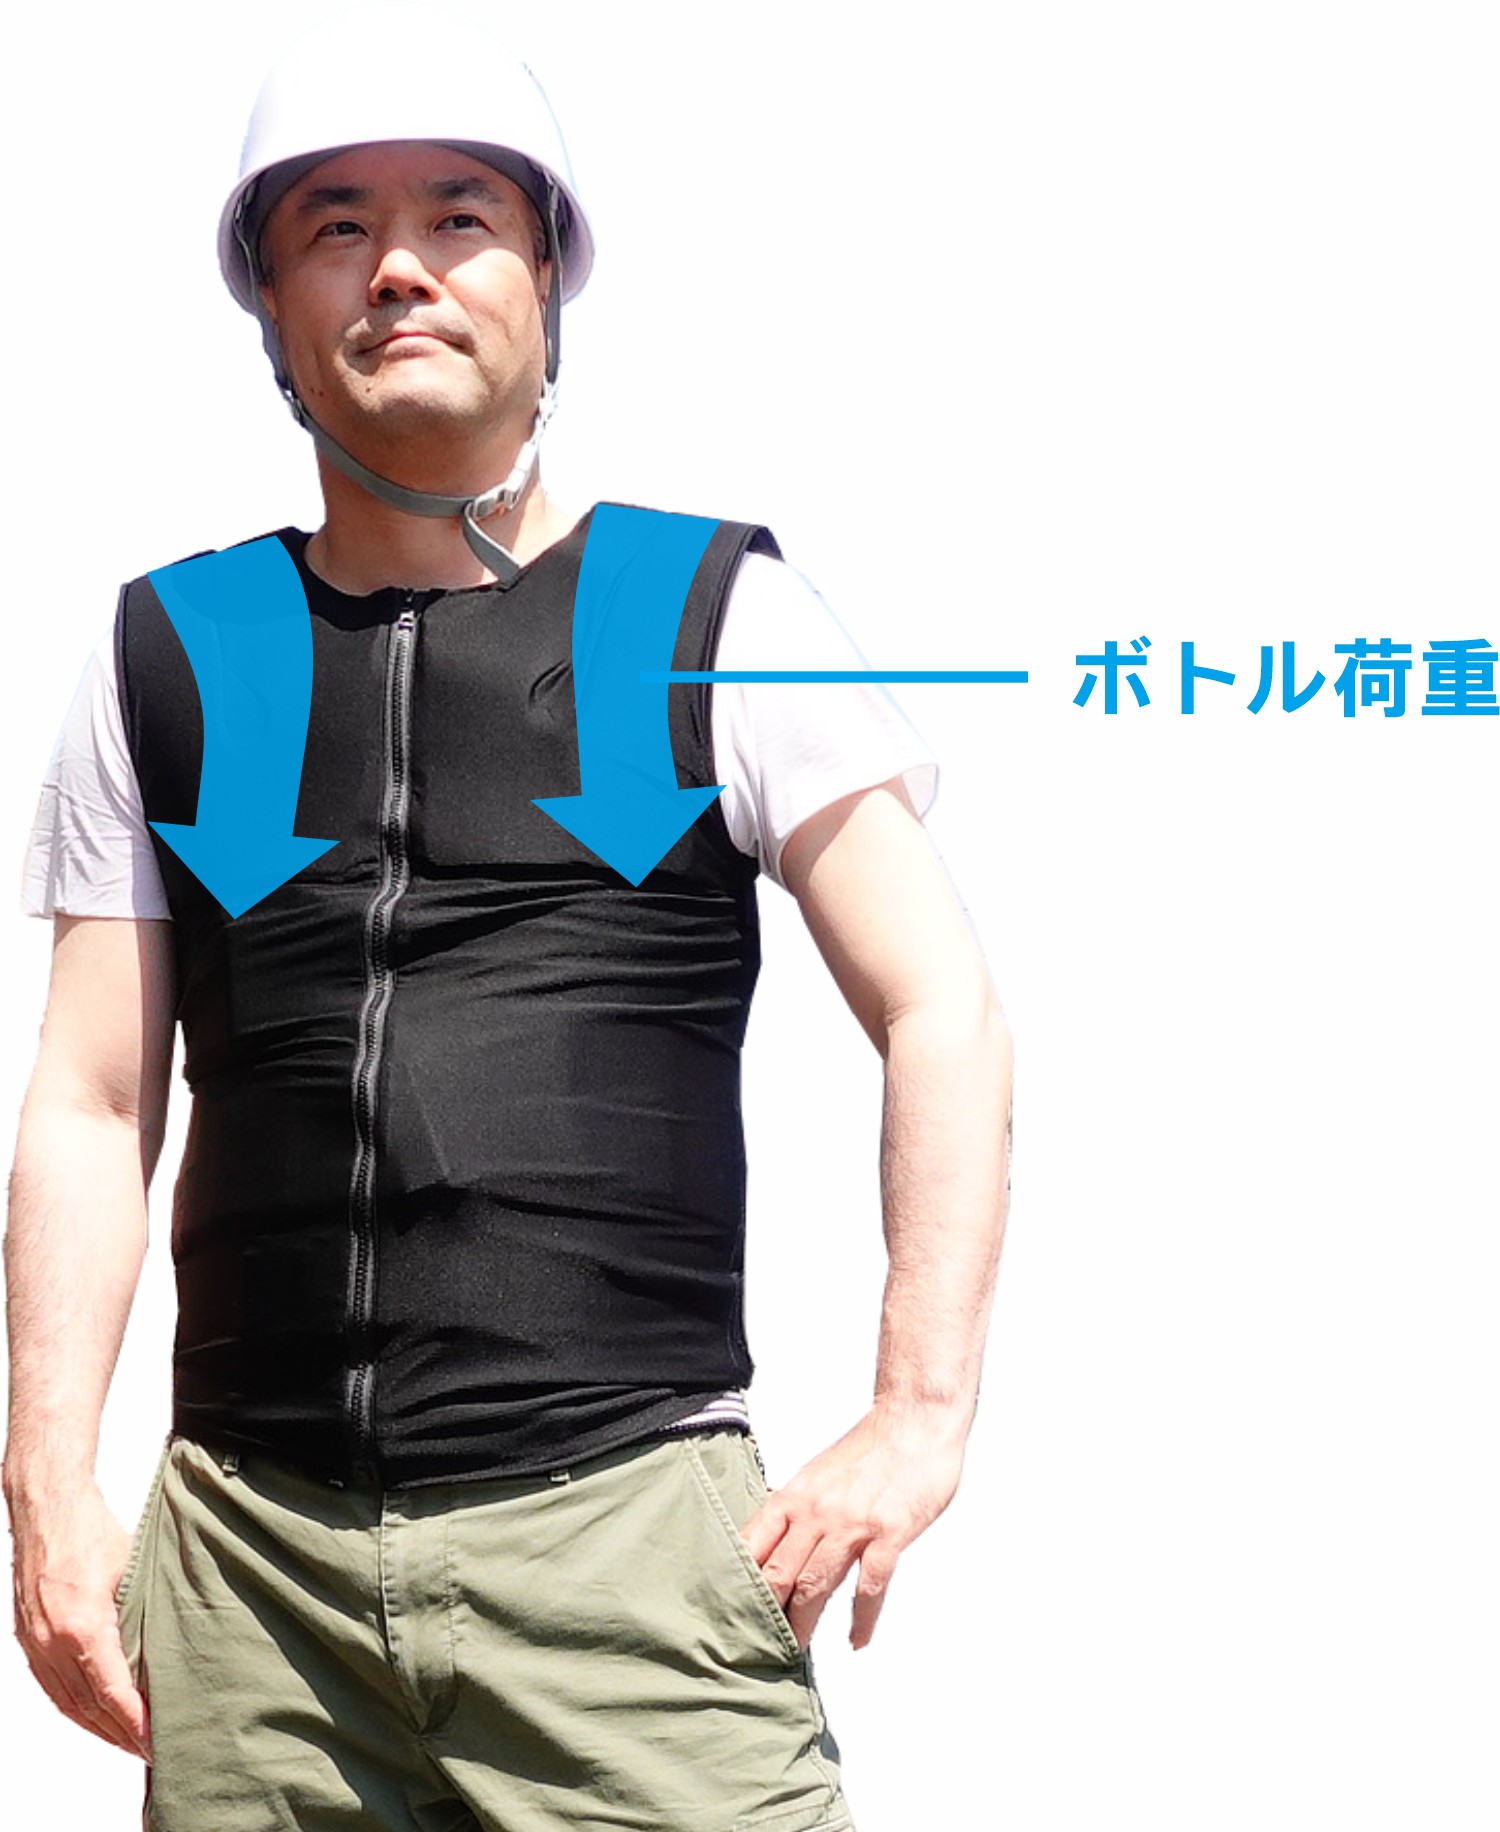 人間エアコン水冷服 :: 【K2】VER2着るだけ水冷服・人間エアコン・オールインワン化を実現した次世代熱中症対策・面水冷着衣